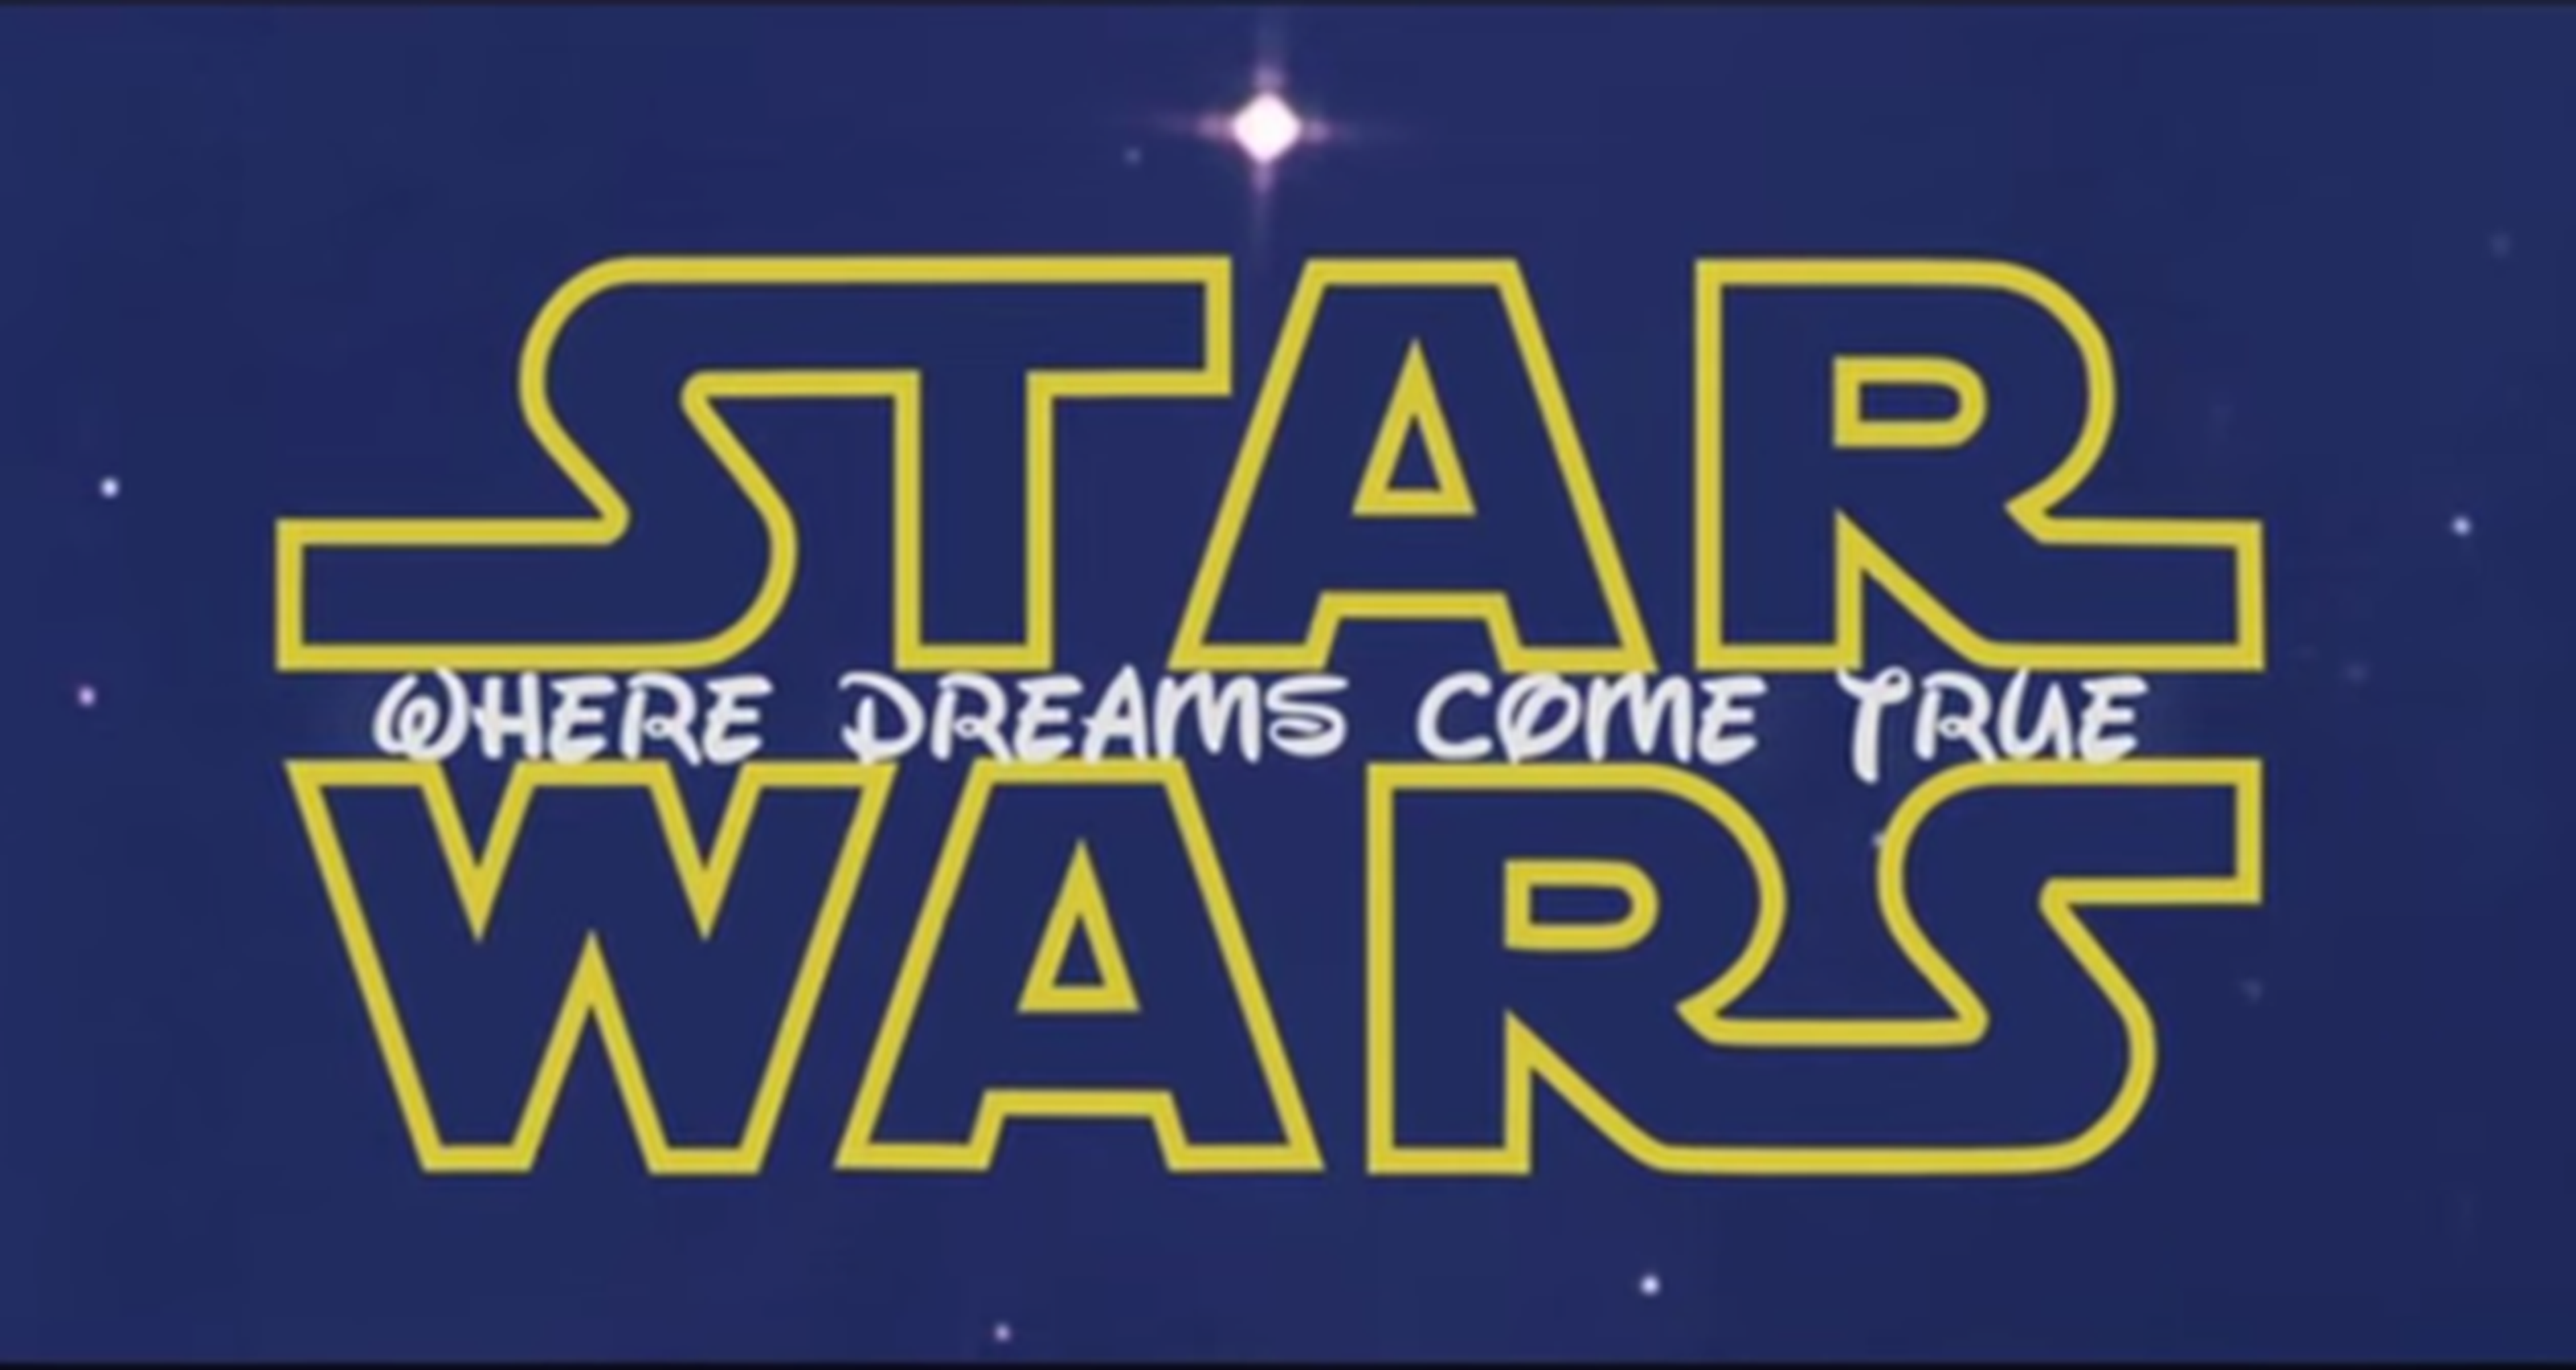 Star Wars El Despertar de la Fuerza y Disney: Mashup tronchante e imperdible